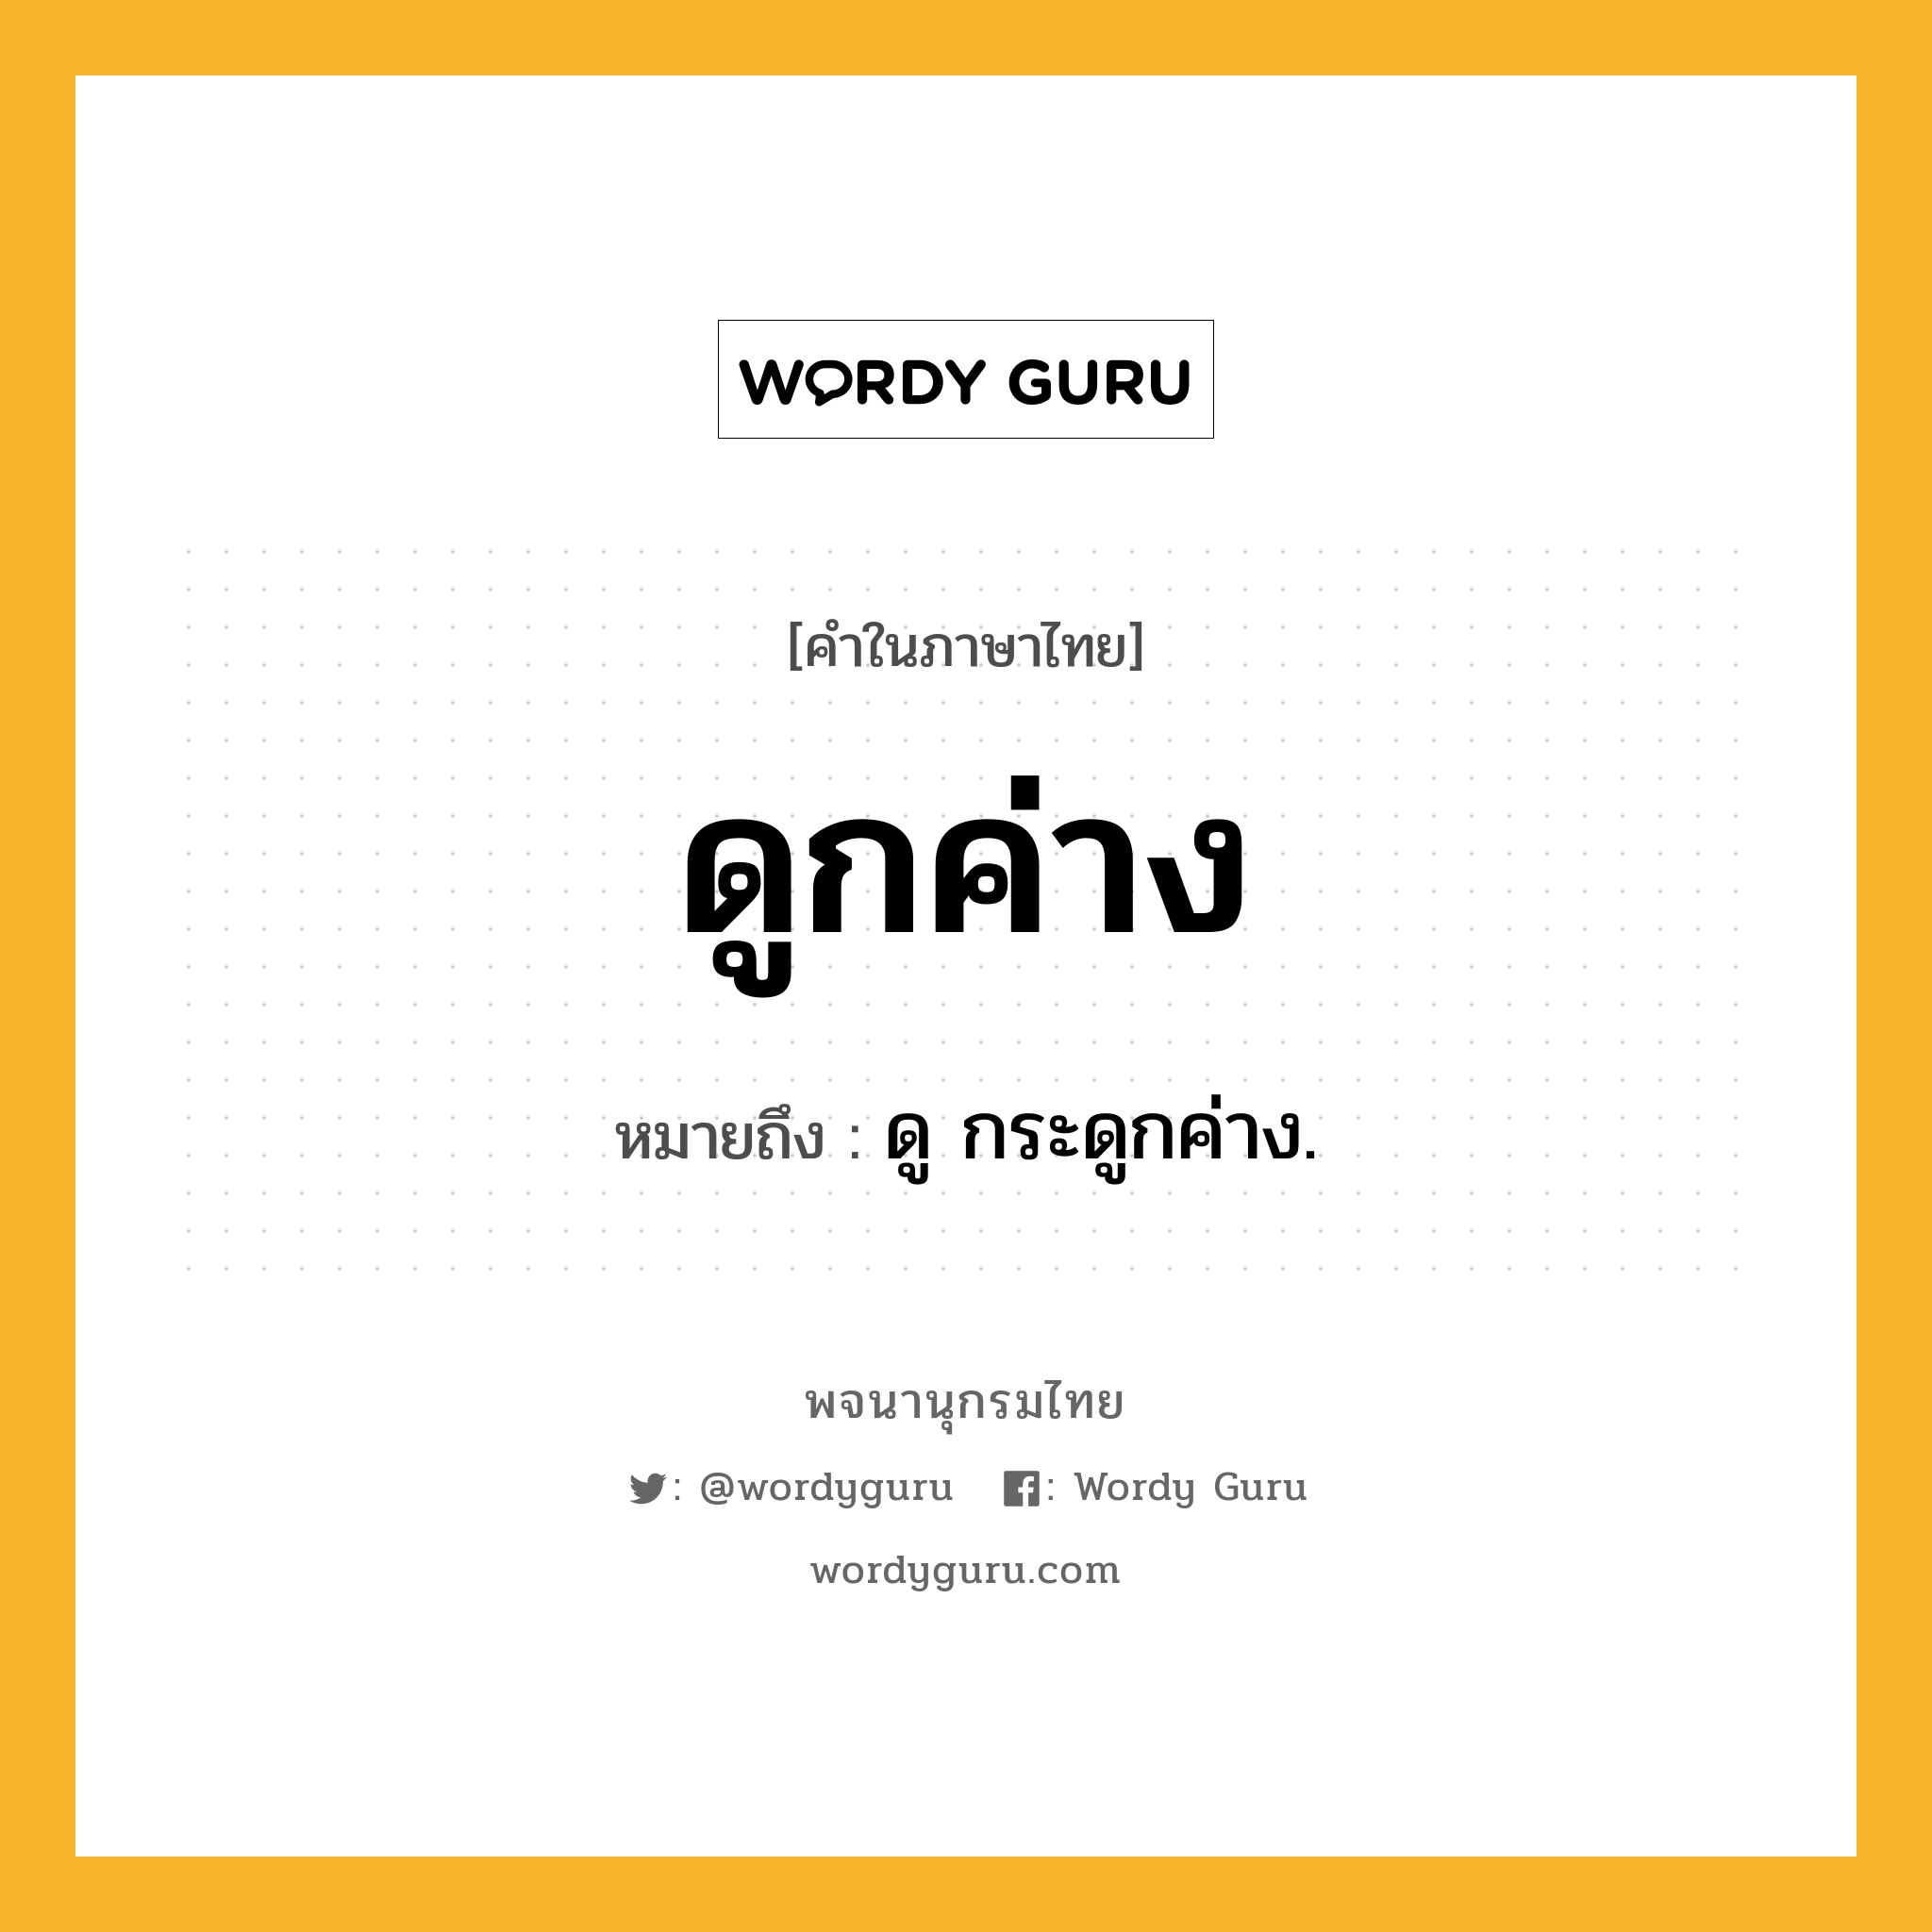 ดูกค่าง หมายถึงอะไร?, คำในภาษาไทย ดูกค่าง หมายถึง ดู กระดูกค่าง.